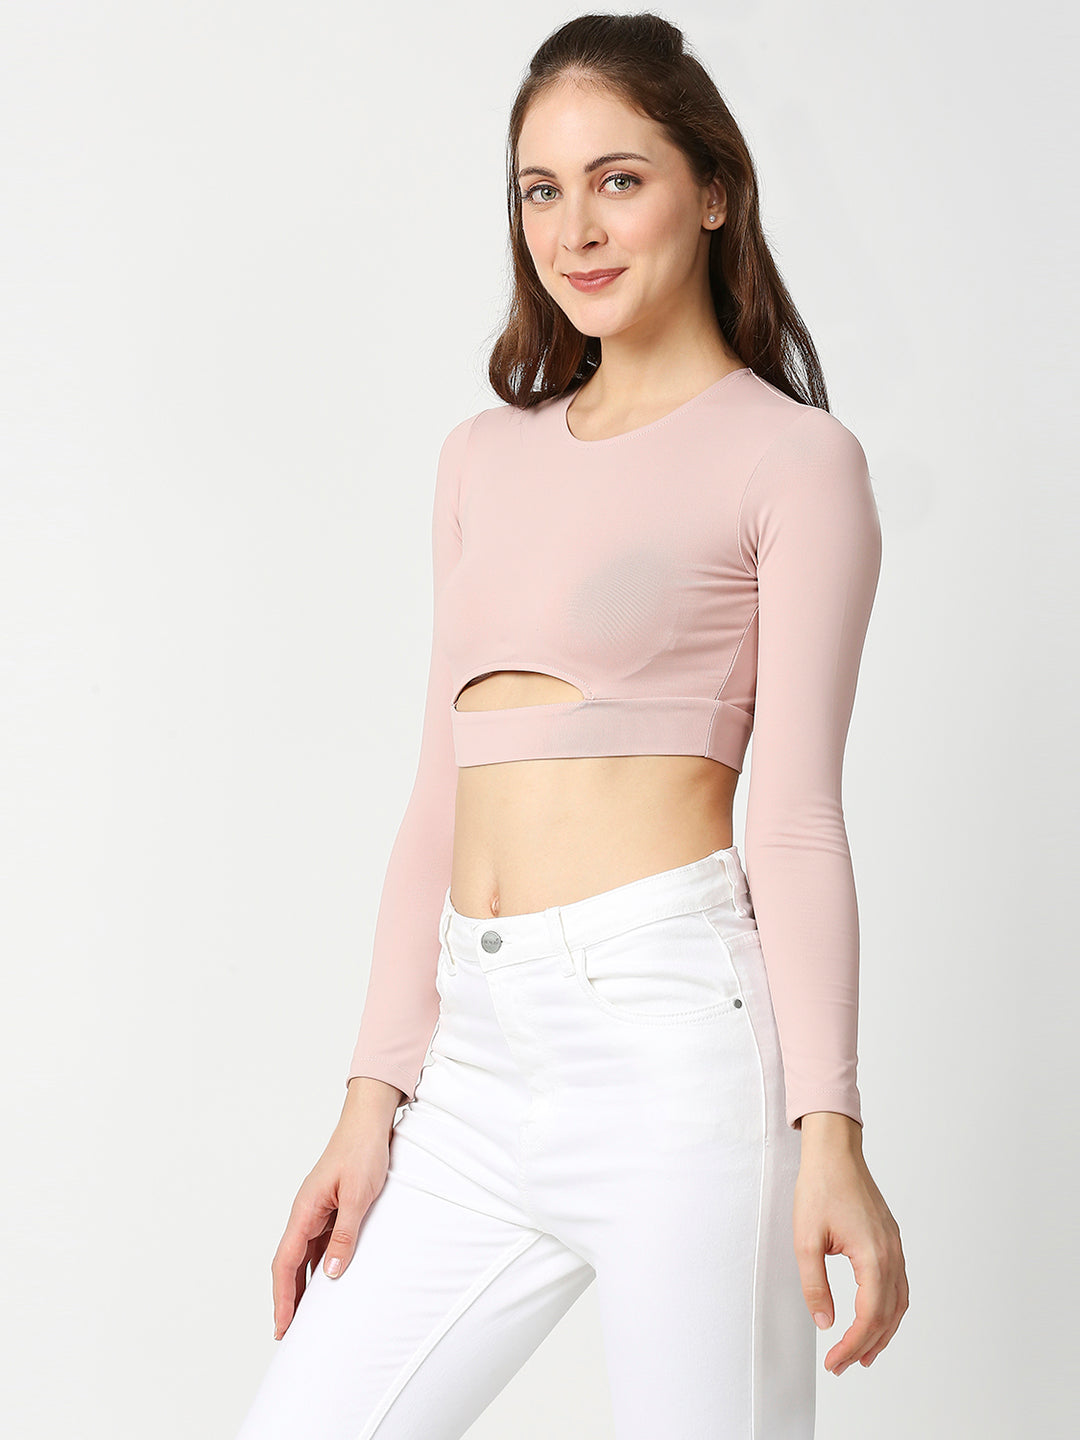 Buy Blamblack Women's Powder Pink Full Sleeves Crop Top